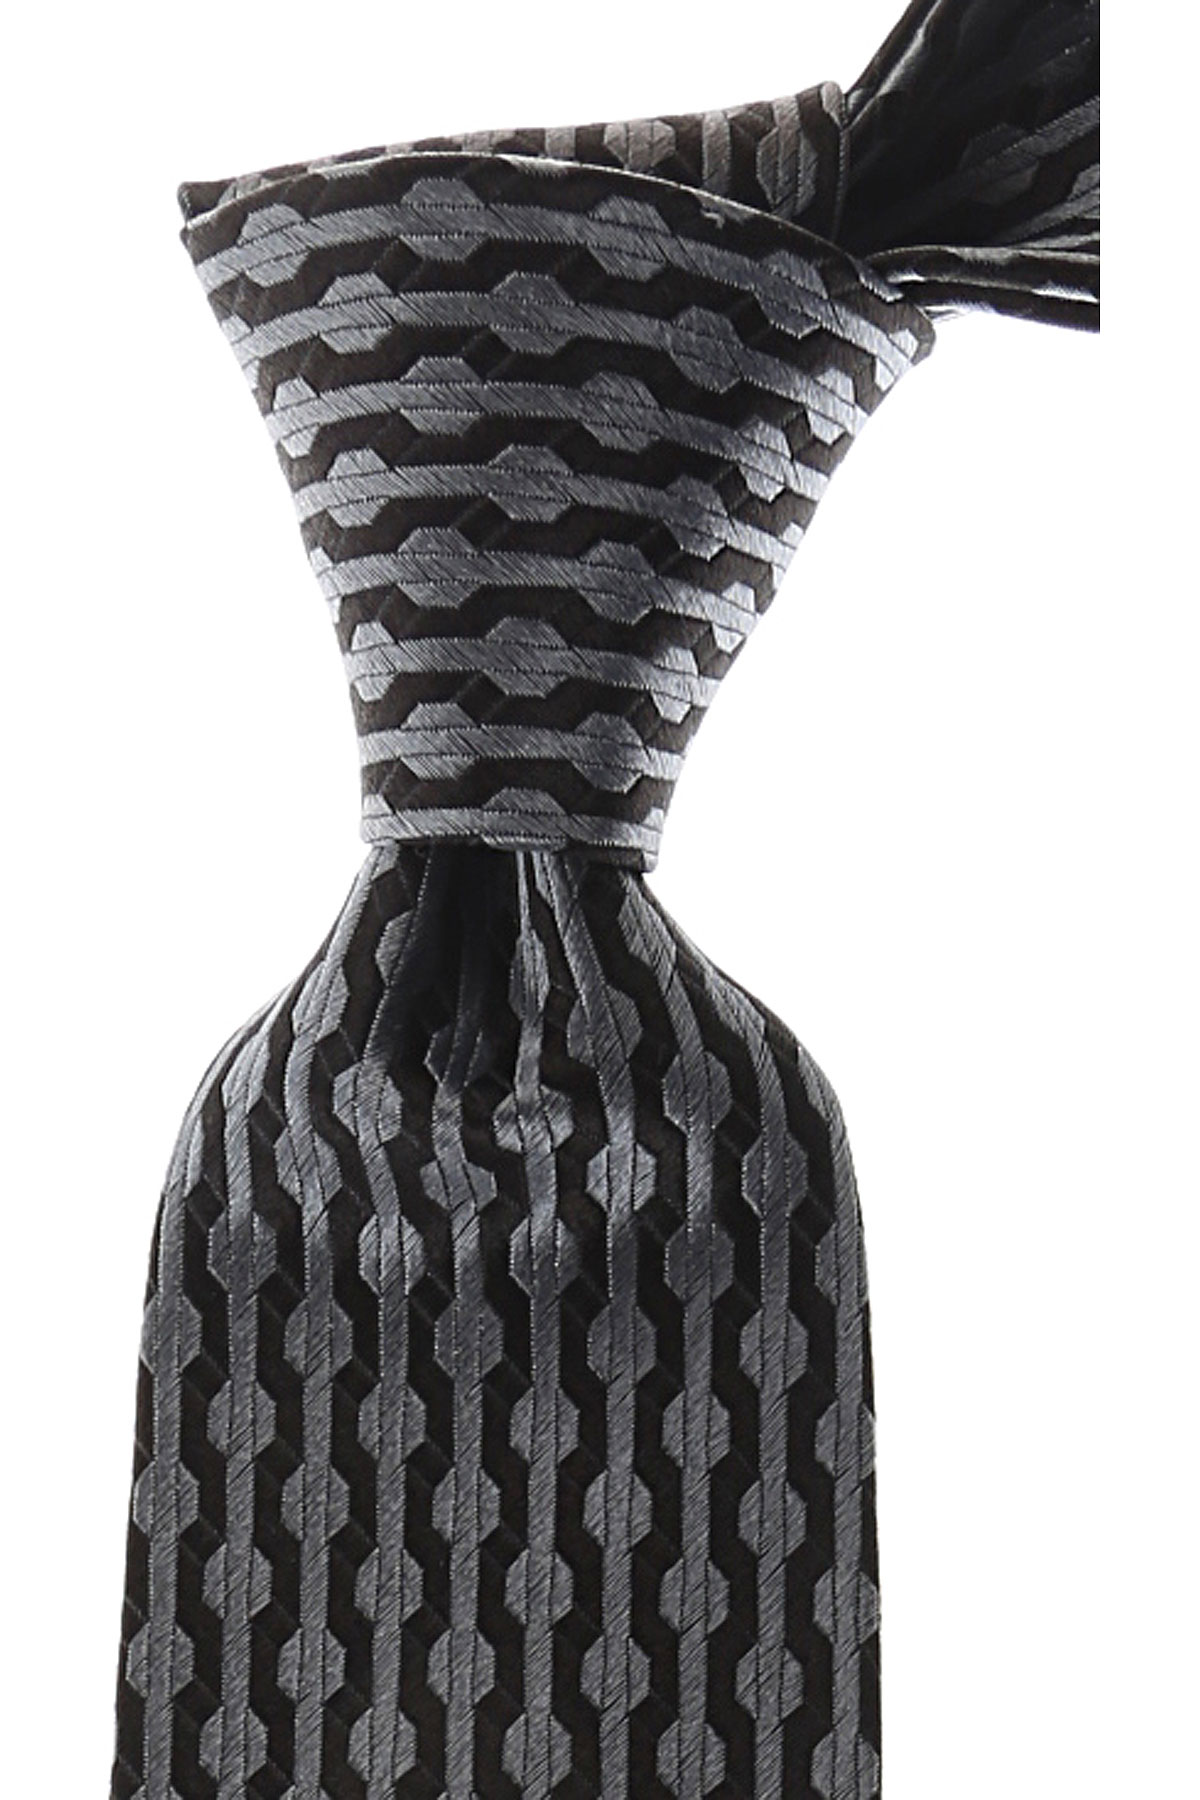 Cravates Gianni Versace , Noir, Soie, 2017